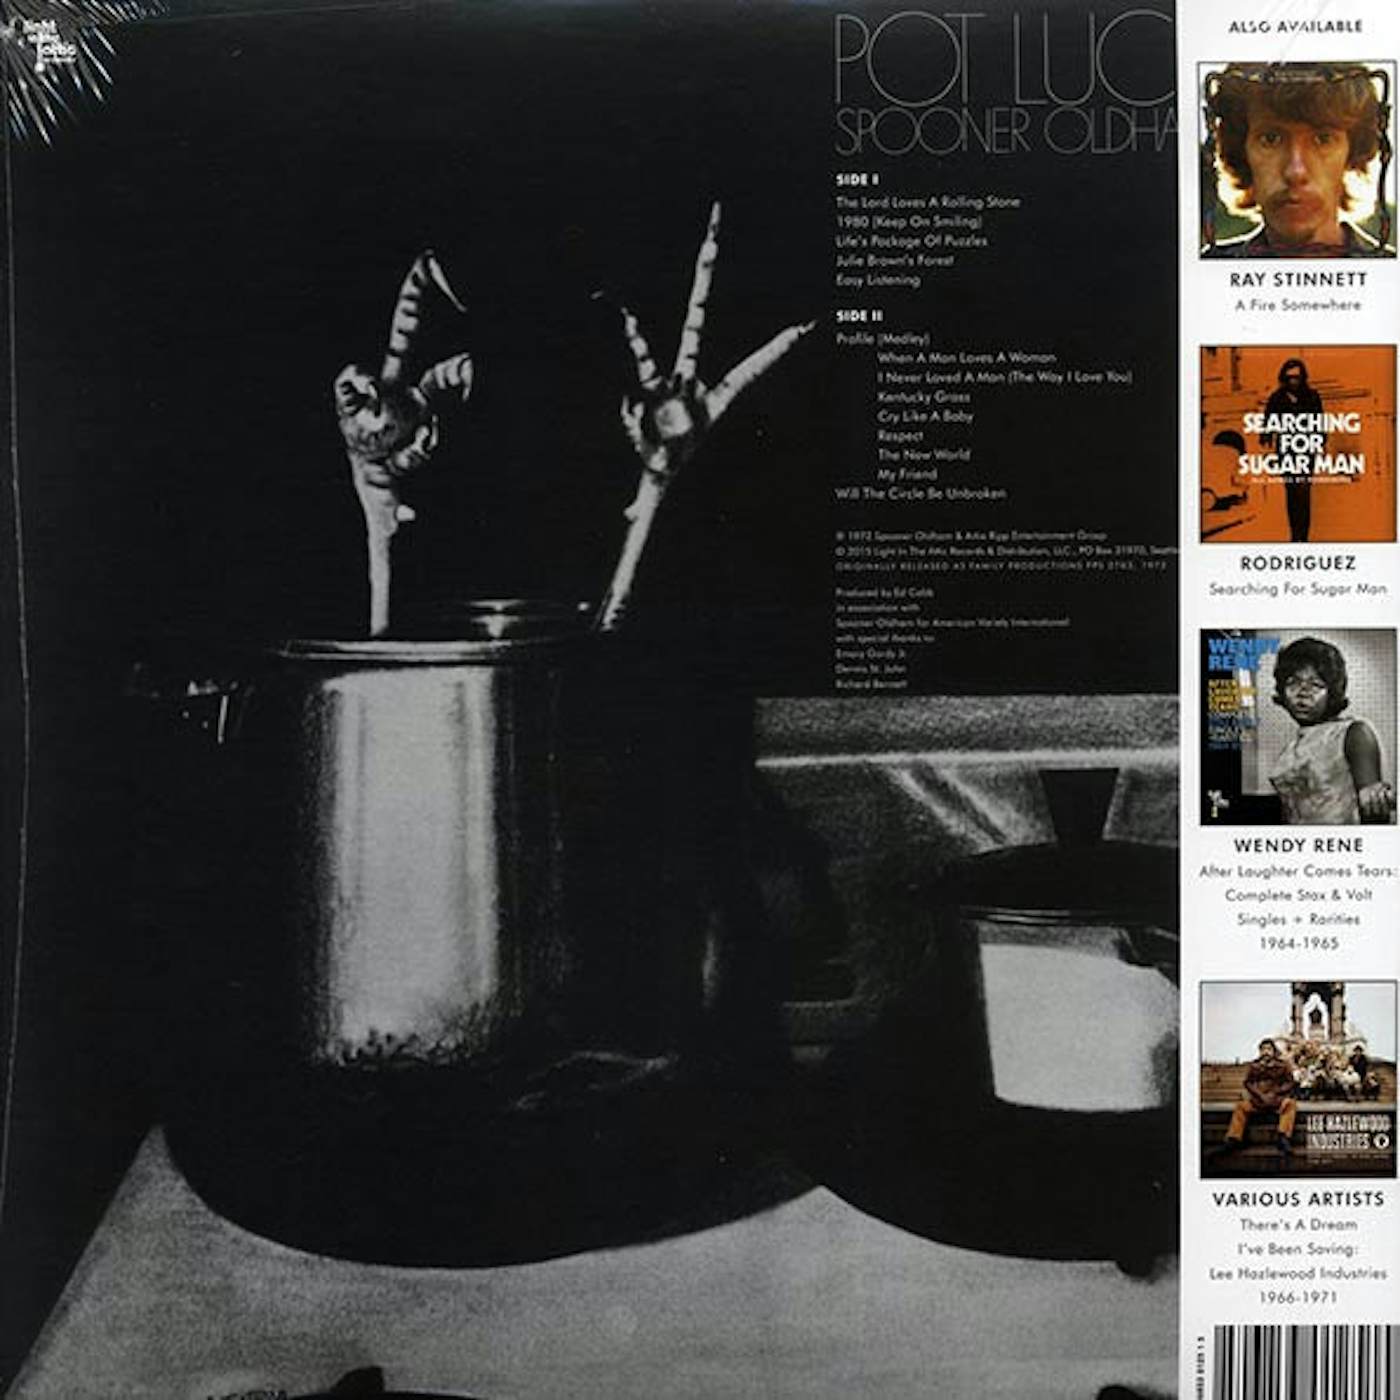 Spooner Oldham  LP -  Pot Luck (Vinyl)